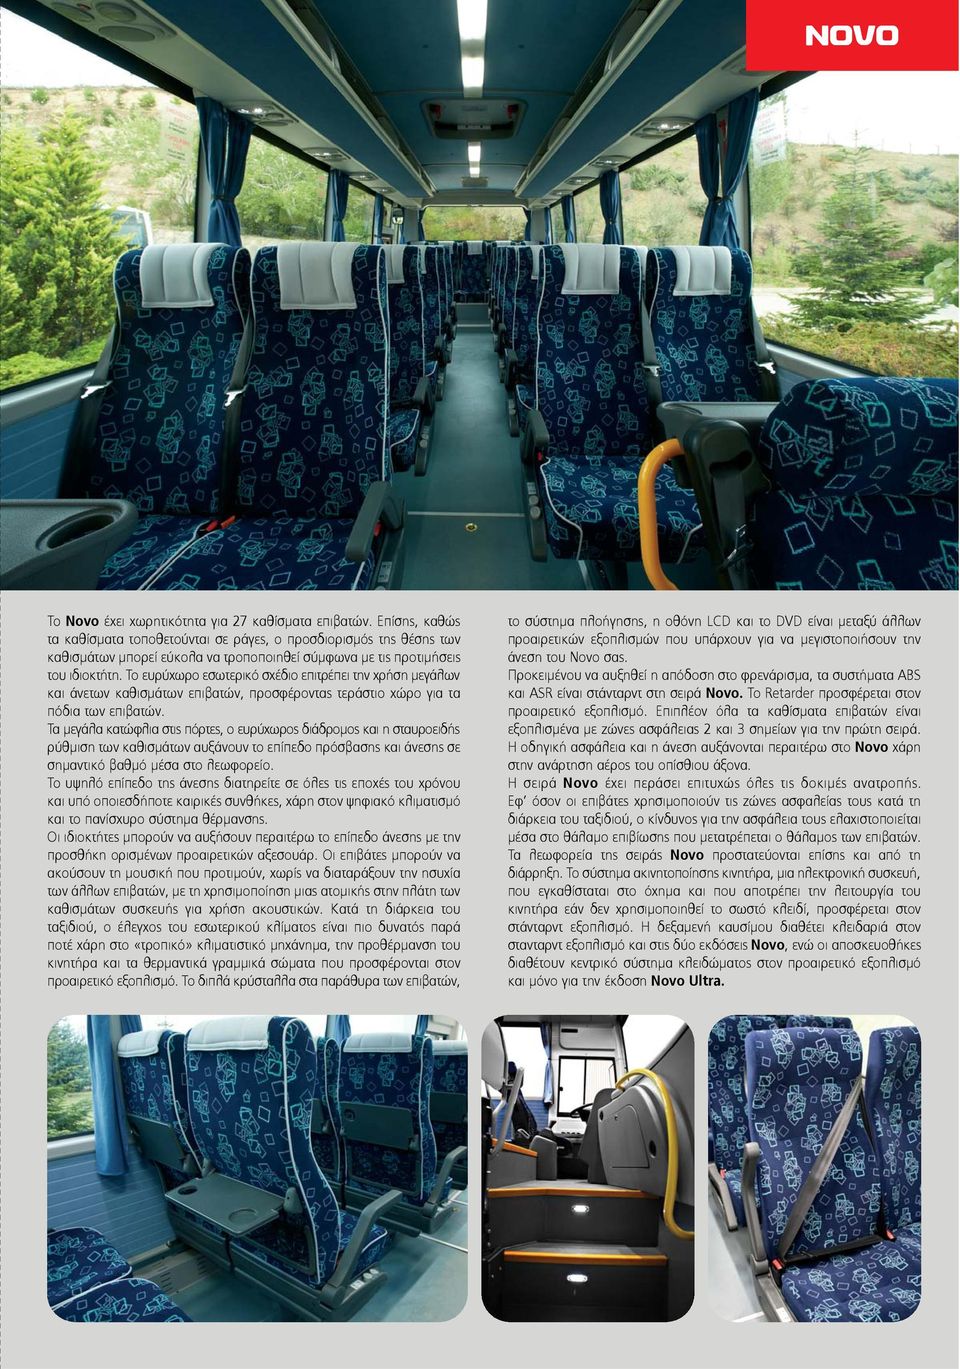 Το ευρύχωρο εσωτερικό σχέδιο επιτρέπει την χρήση μεγάλων και άνετων καθισμάτων επιβατών, προσφέροντας τεράστιο χώρο για τα πόδια των επιβατών.